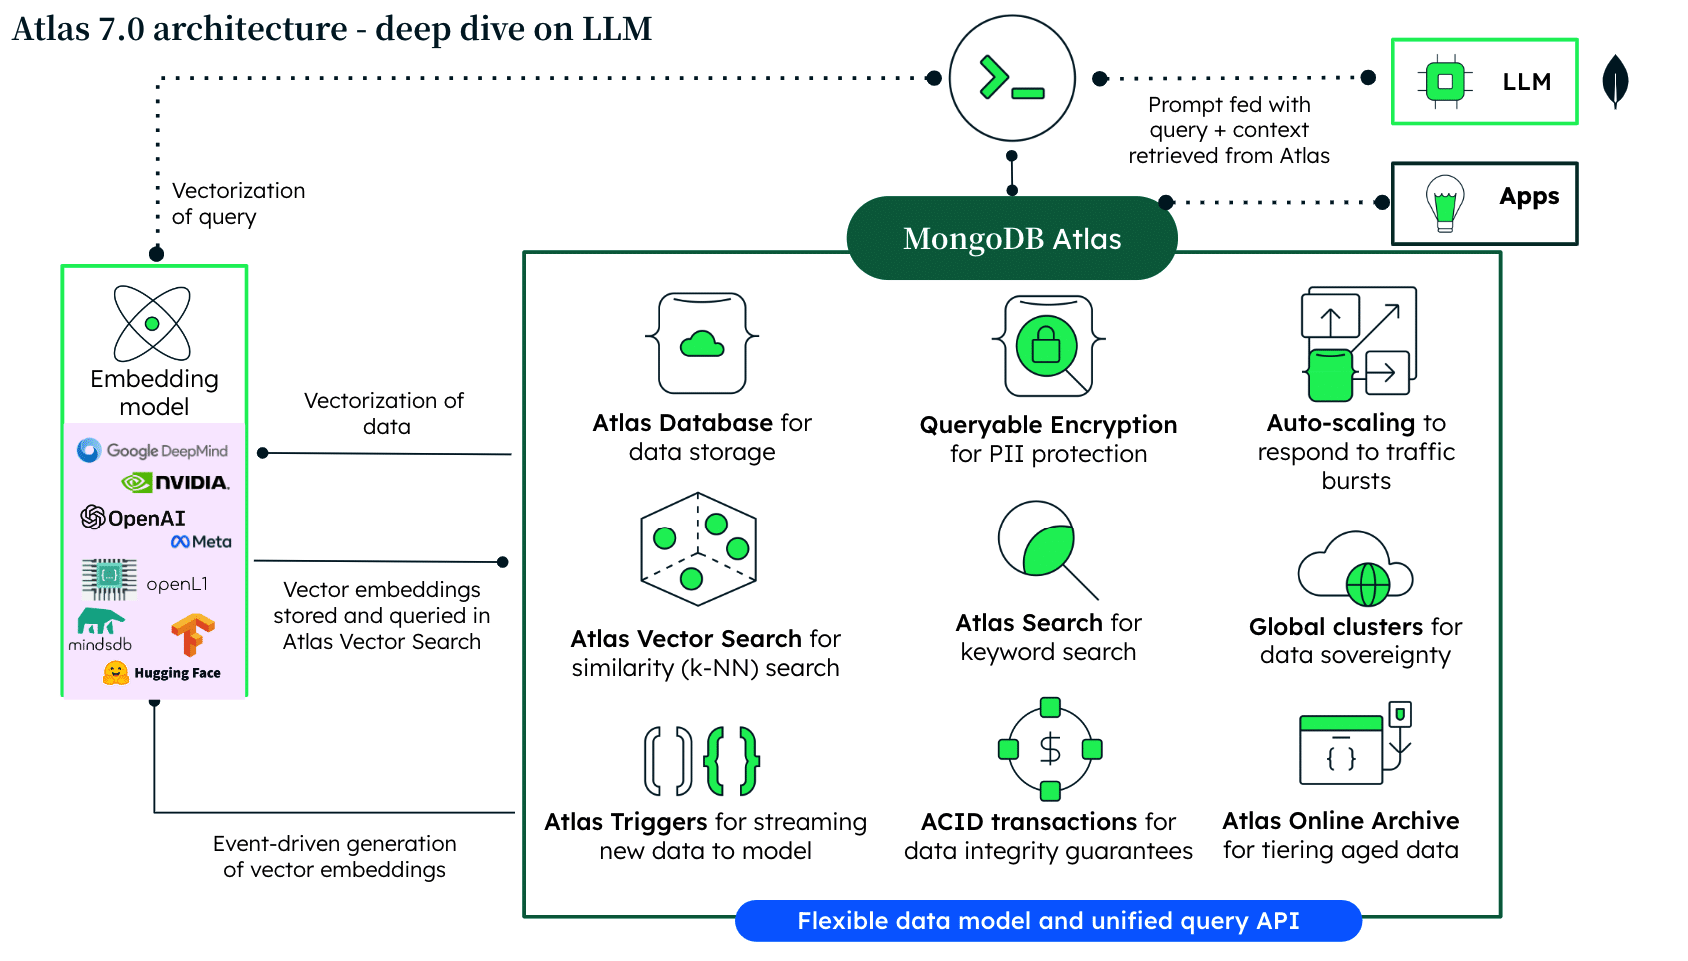 Atlas 7.0 architecture - deep dive on LLM